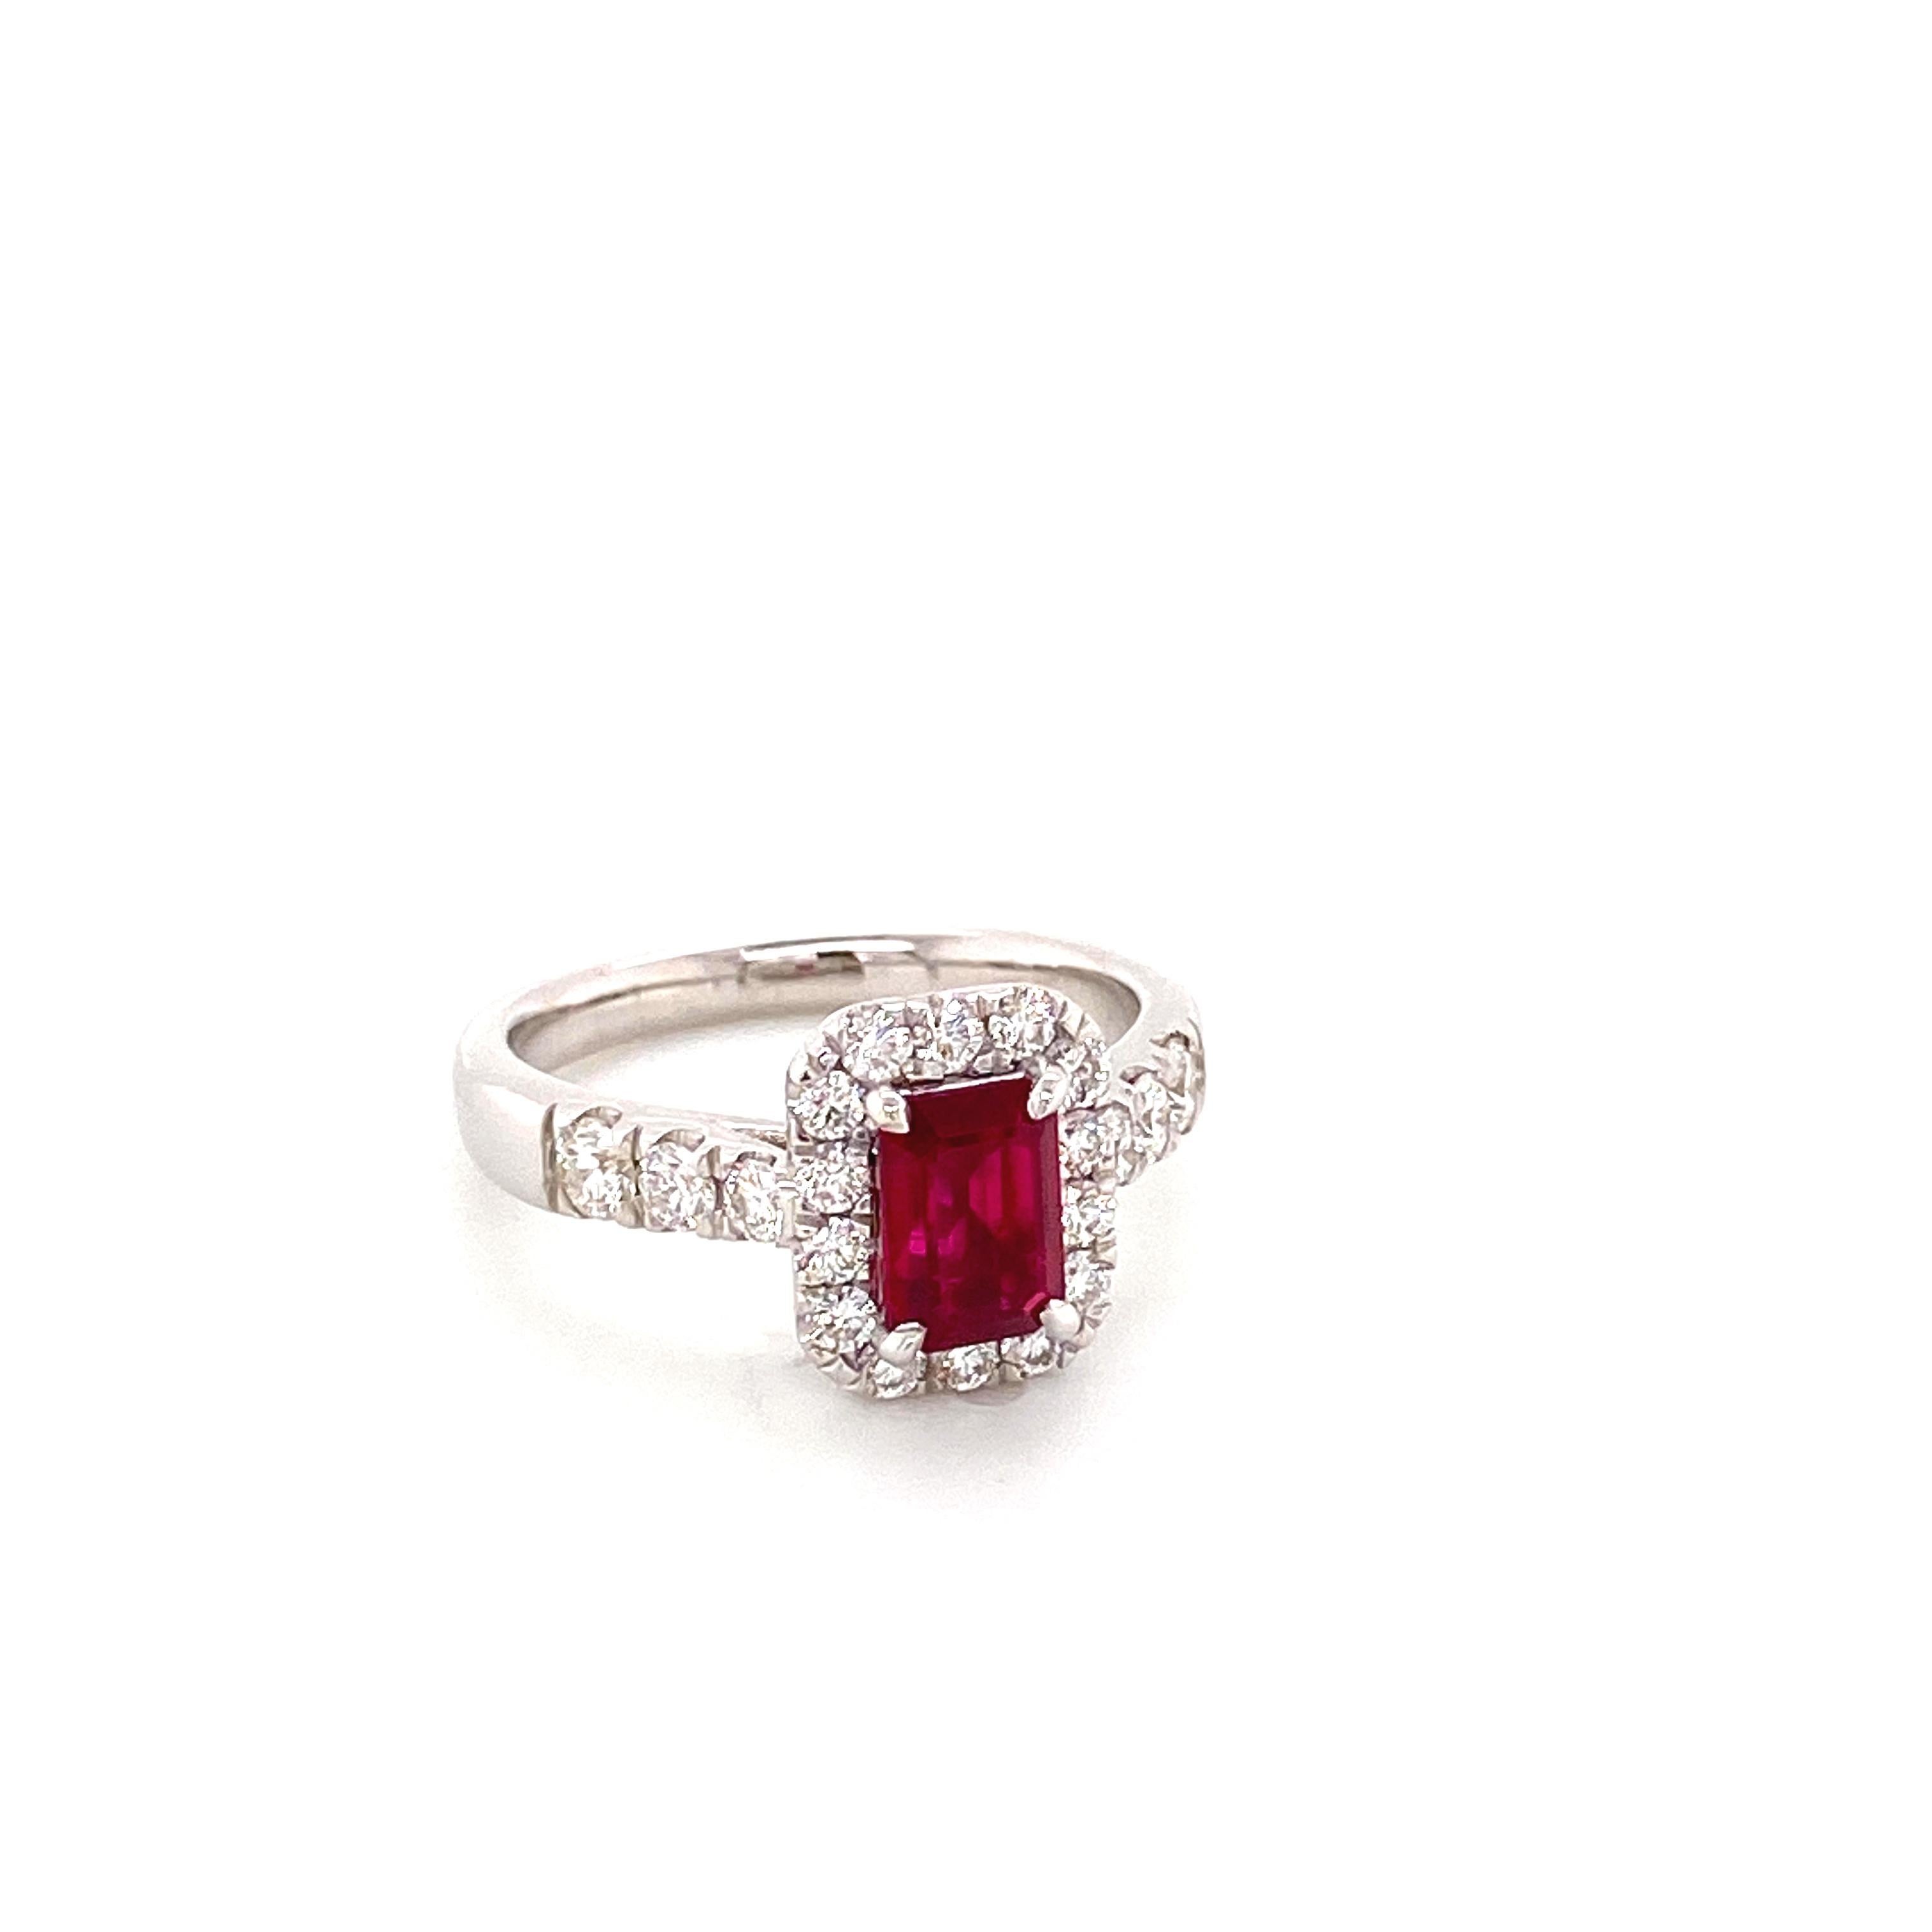 1,28 Karat GRS-zertifizierter Verlobungsring aus birmanischem Rubin und Diamant mit Taubenblut:

Dieser wunderschöne und seltene Ring zeichnet sich durch einen exquisiten, GRS-Labor-zertifizierten roten burmesischen Rubin von 1,28 Karat aus, der von